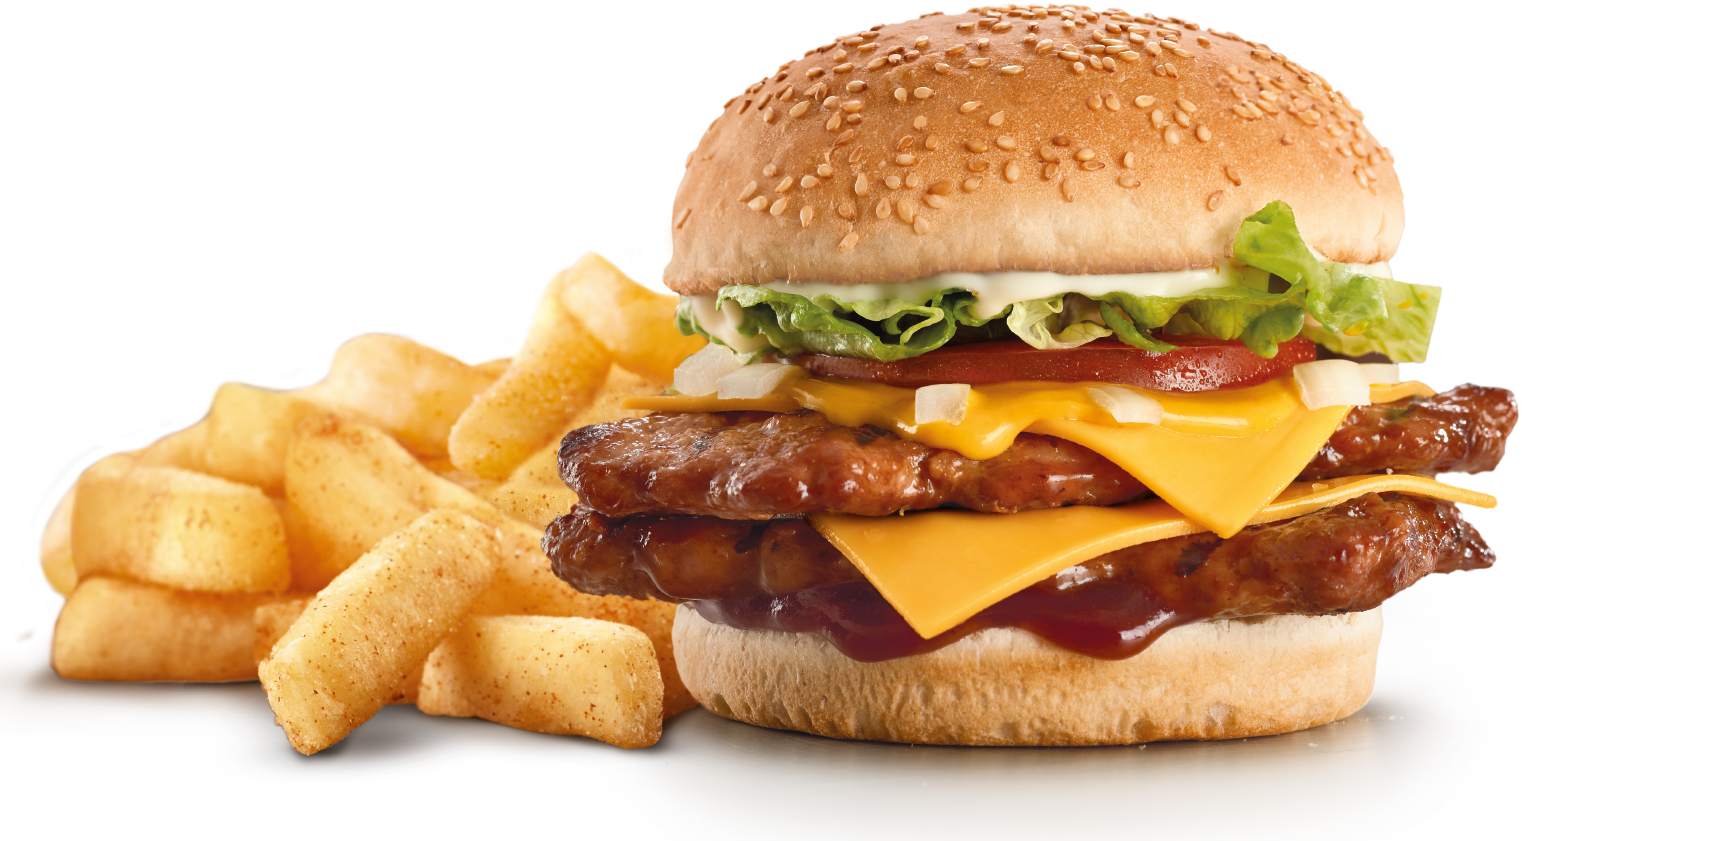 Download King Hamburger Food Ribs Fries Fast Burger Hq Png Image Freepngimg